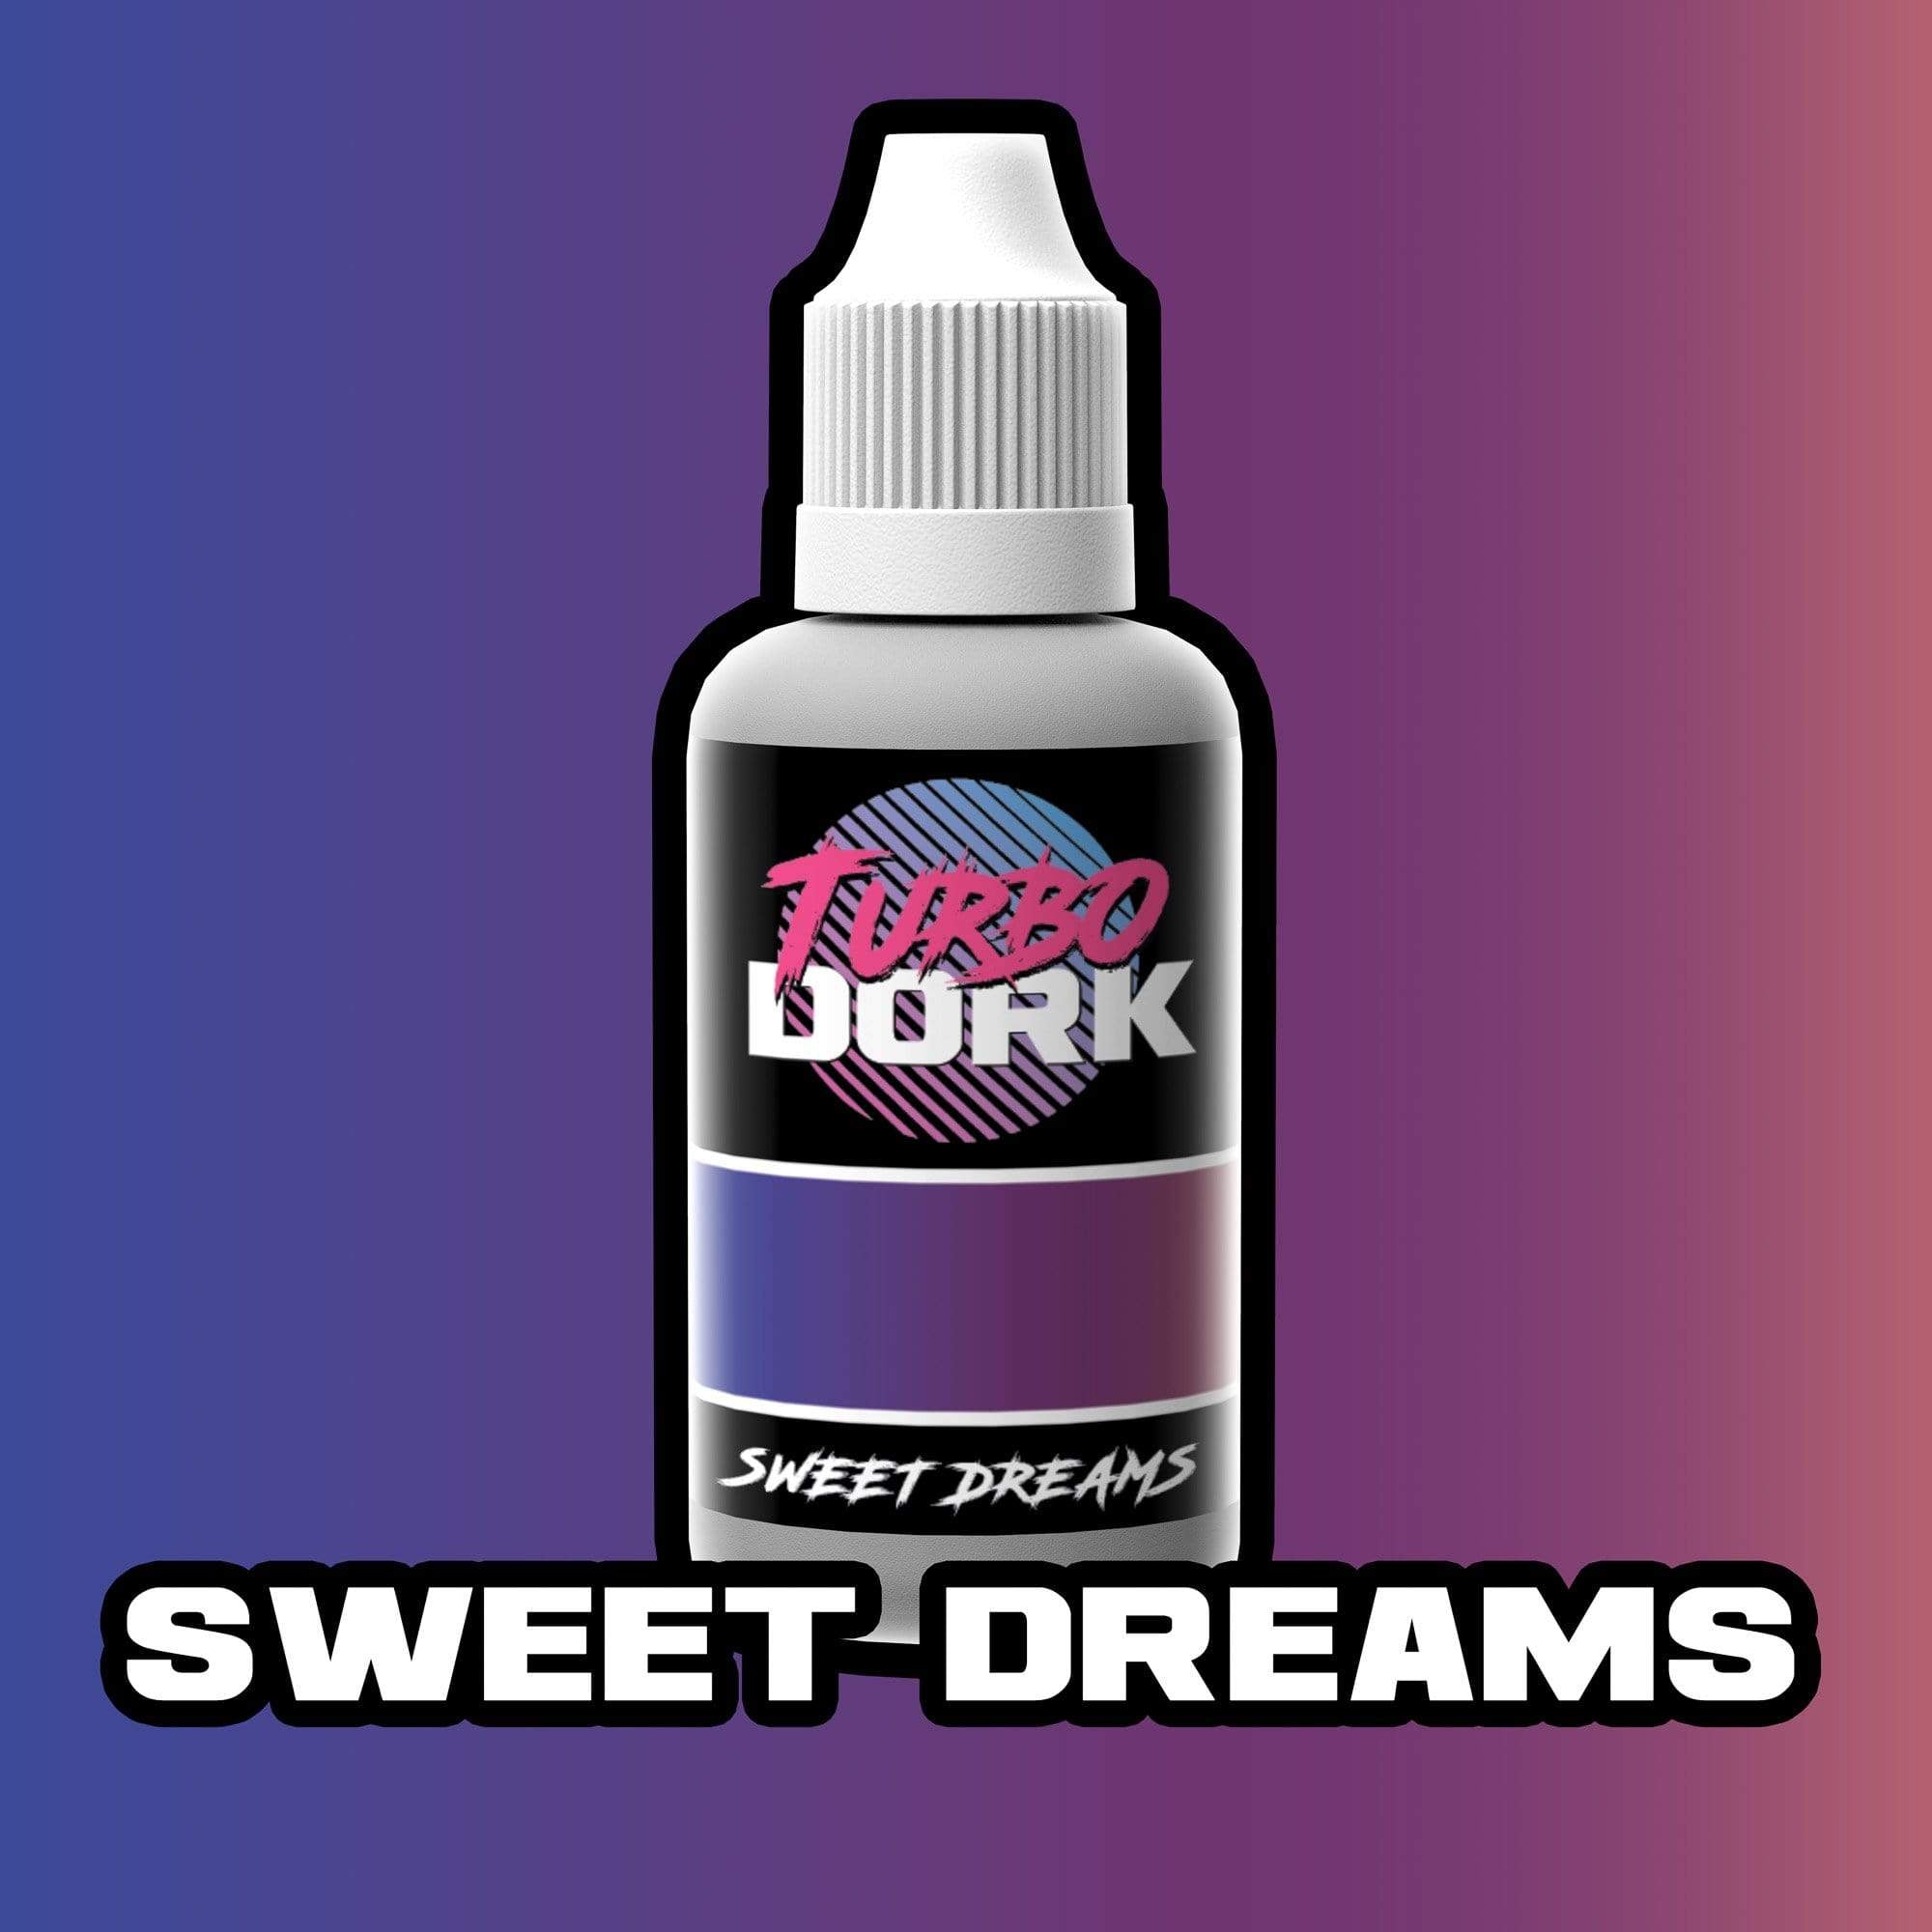 Sweet Dreams Colorshift Acrylic Paint Turboshift Turbo Dork Exit 23 Games Sweet Dreams Colorshift Acrylic Paint